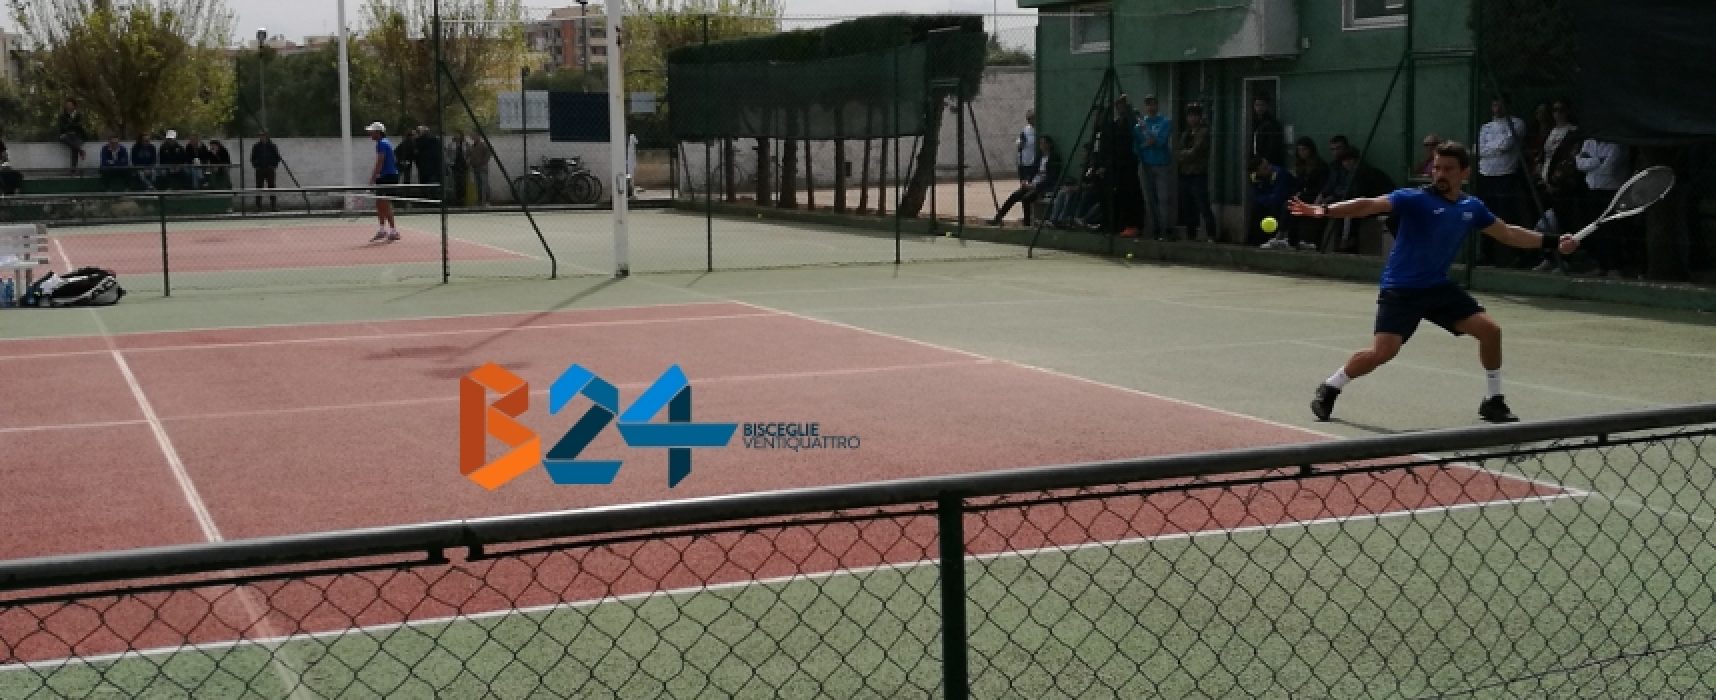 Tennis, Serie B: sconfitta esterna per lo Sporting Club Bisceglie